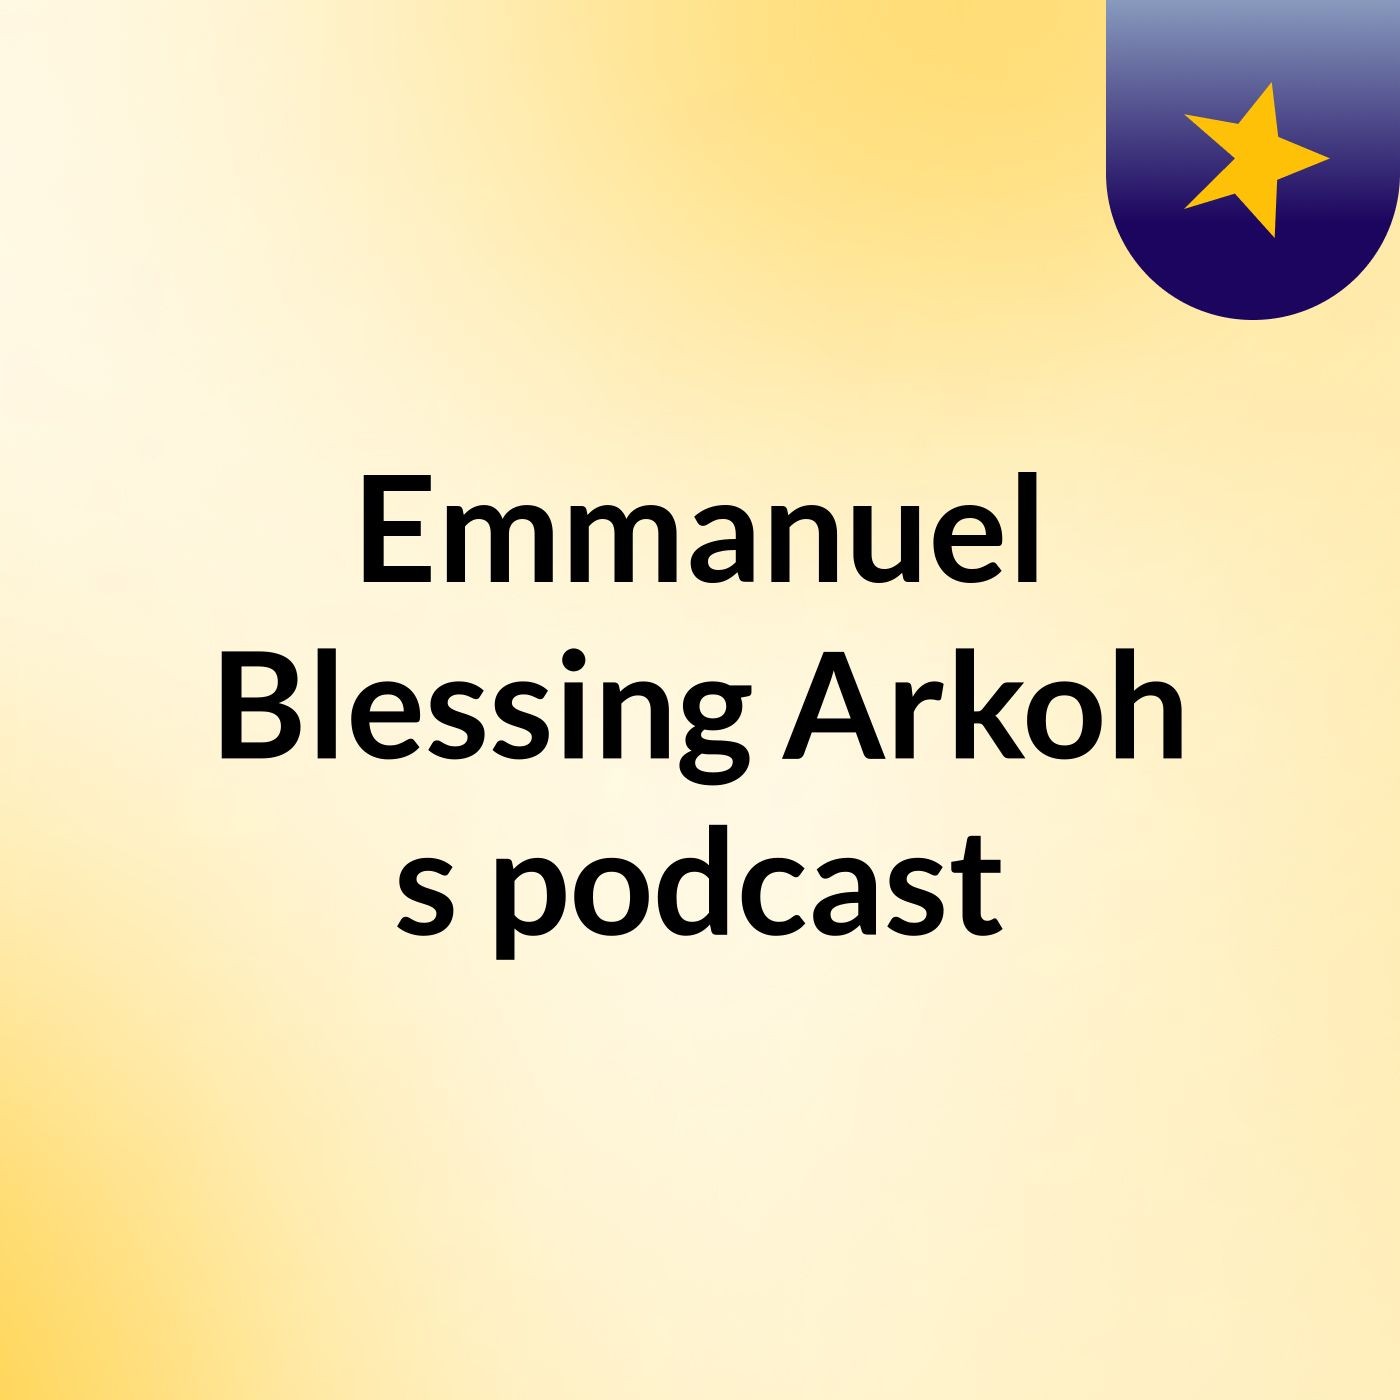 Episode 10 - Emmanuel Blessing Arkoh's podcast